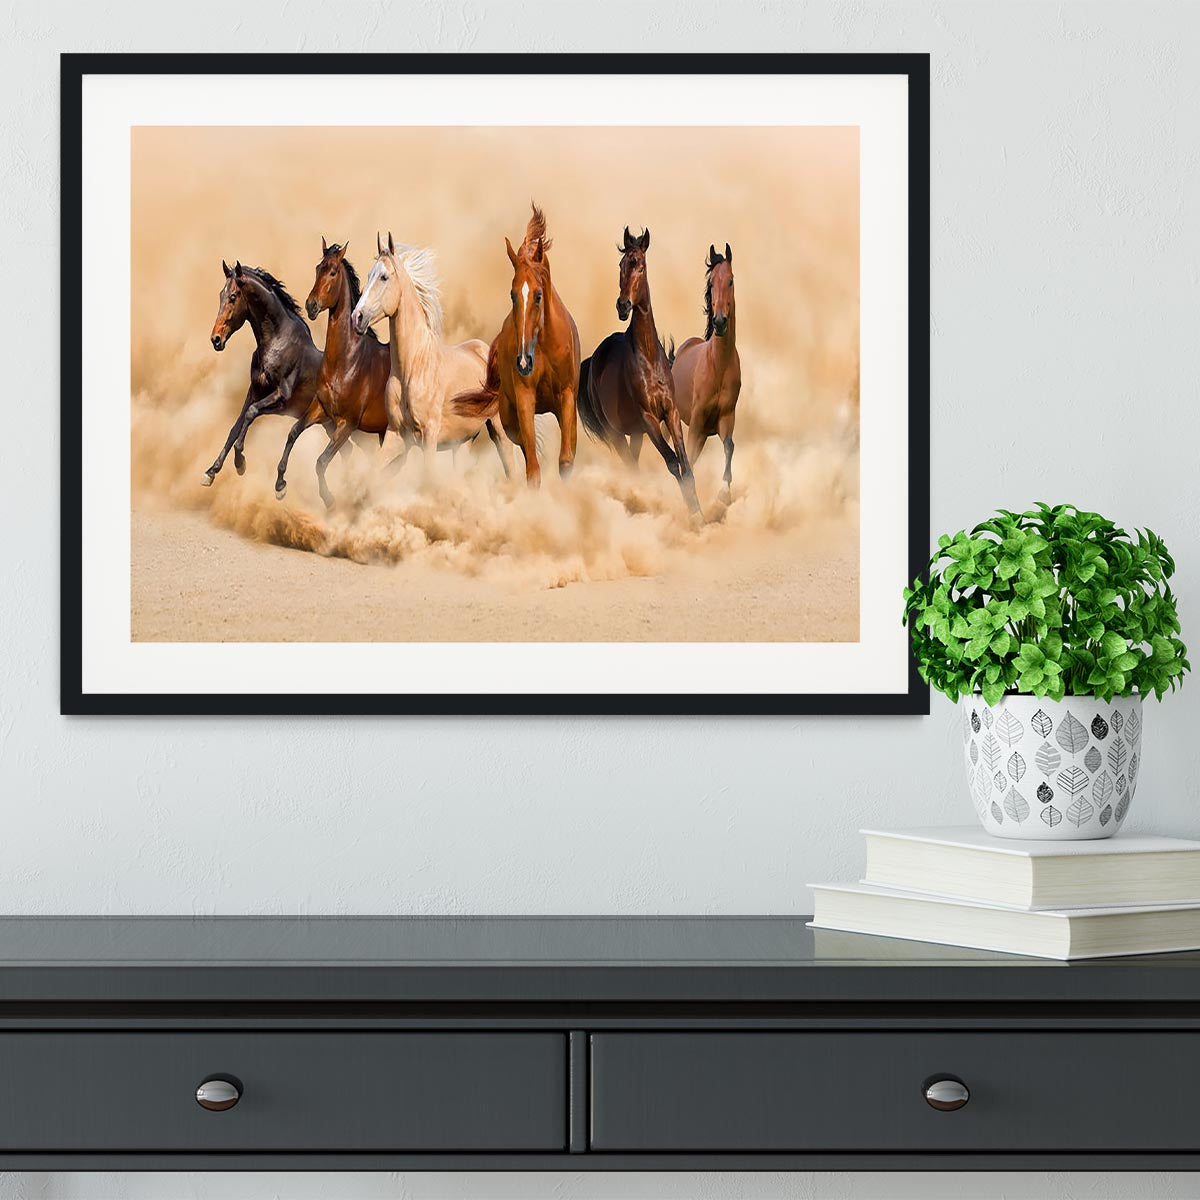 Horse herd run in desert sand storm Framed Print - Canvas Art Rocks - 1